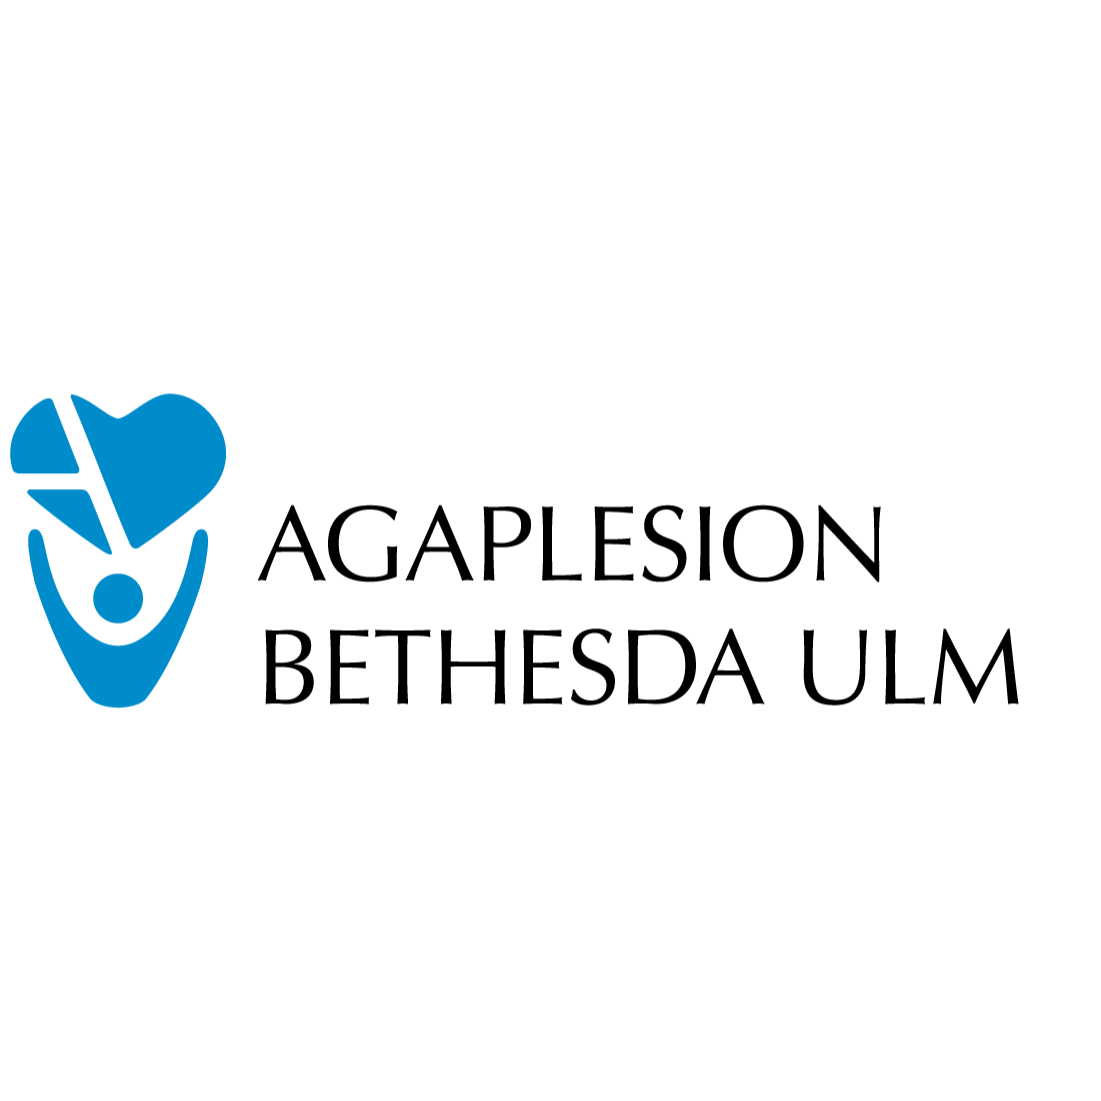 Ambulante geriatrische Rehabilitation, AGAPLESION BETHESDA KLINIK ULM in Ulm an der Donau - Logo